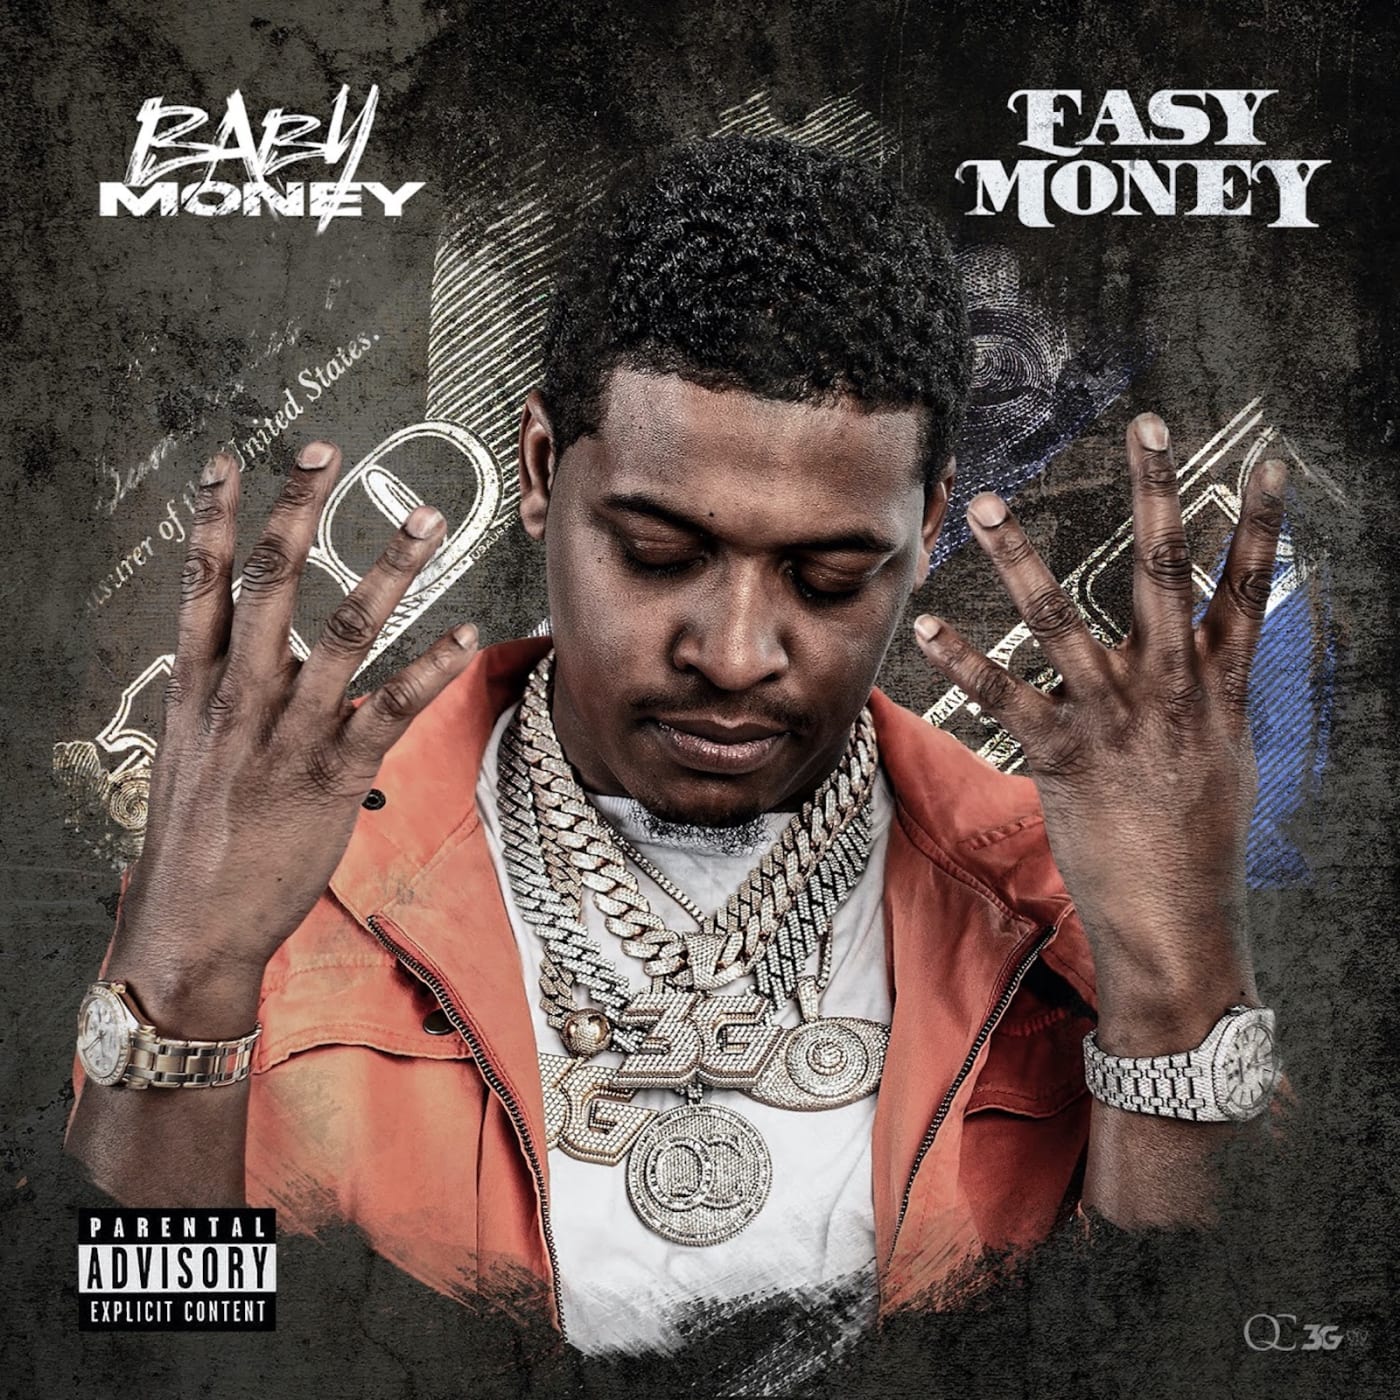 Baby Money 'Easy Money' cover